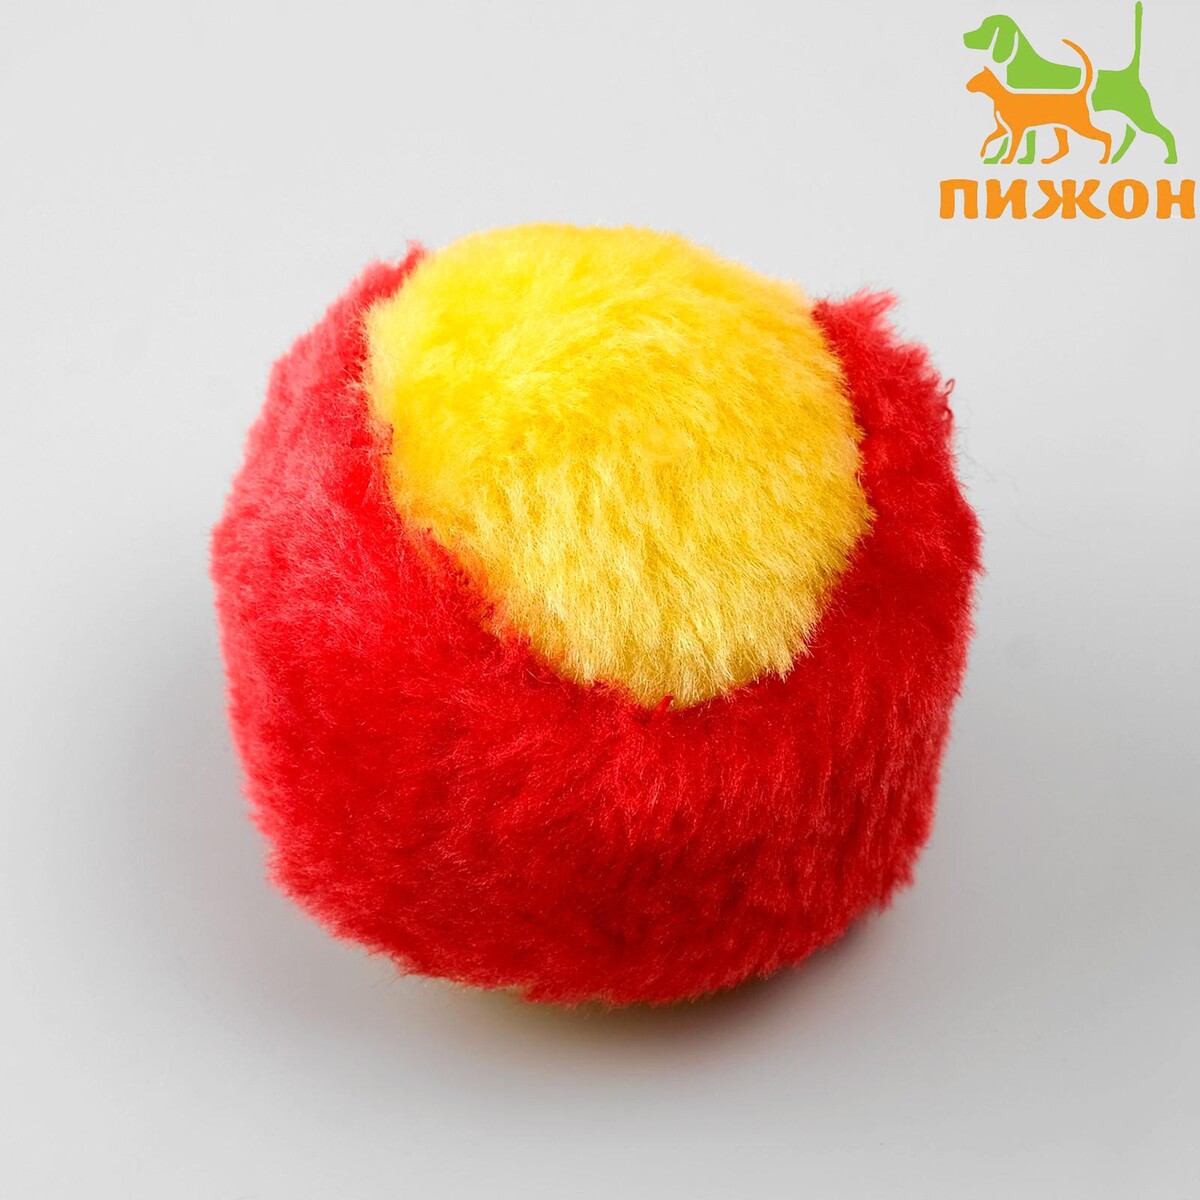 Шарик меховой для кошек, желтый/красный шарик когтеточка с бубенчиком 5 см желтый